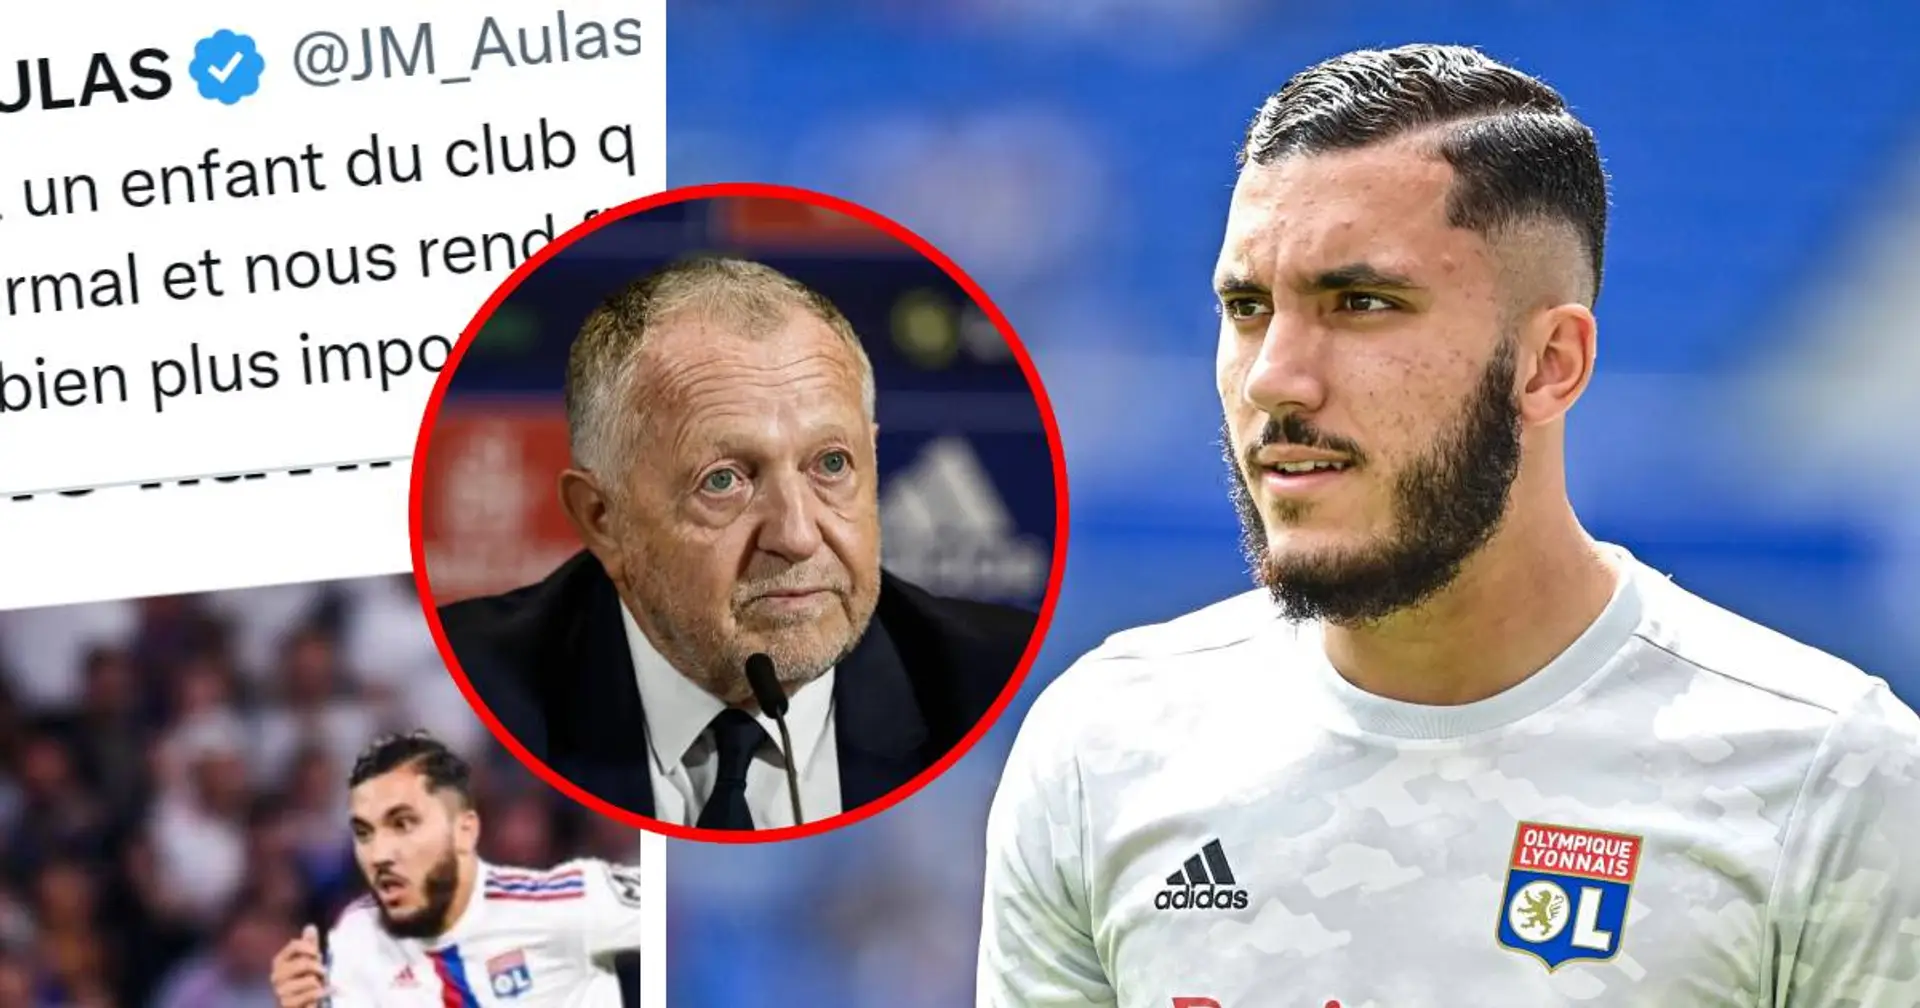 Le PSG aurait fait une première offre pour Cherki, Aulas répond direct à la rumeur via Twitter